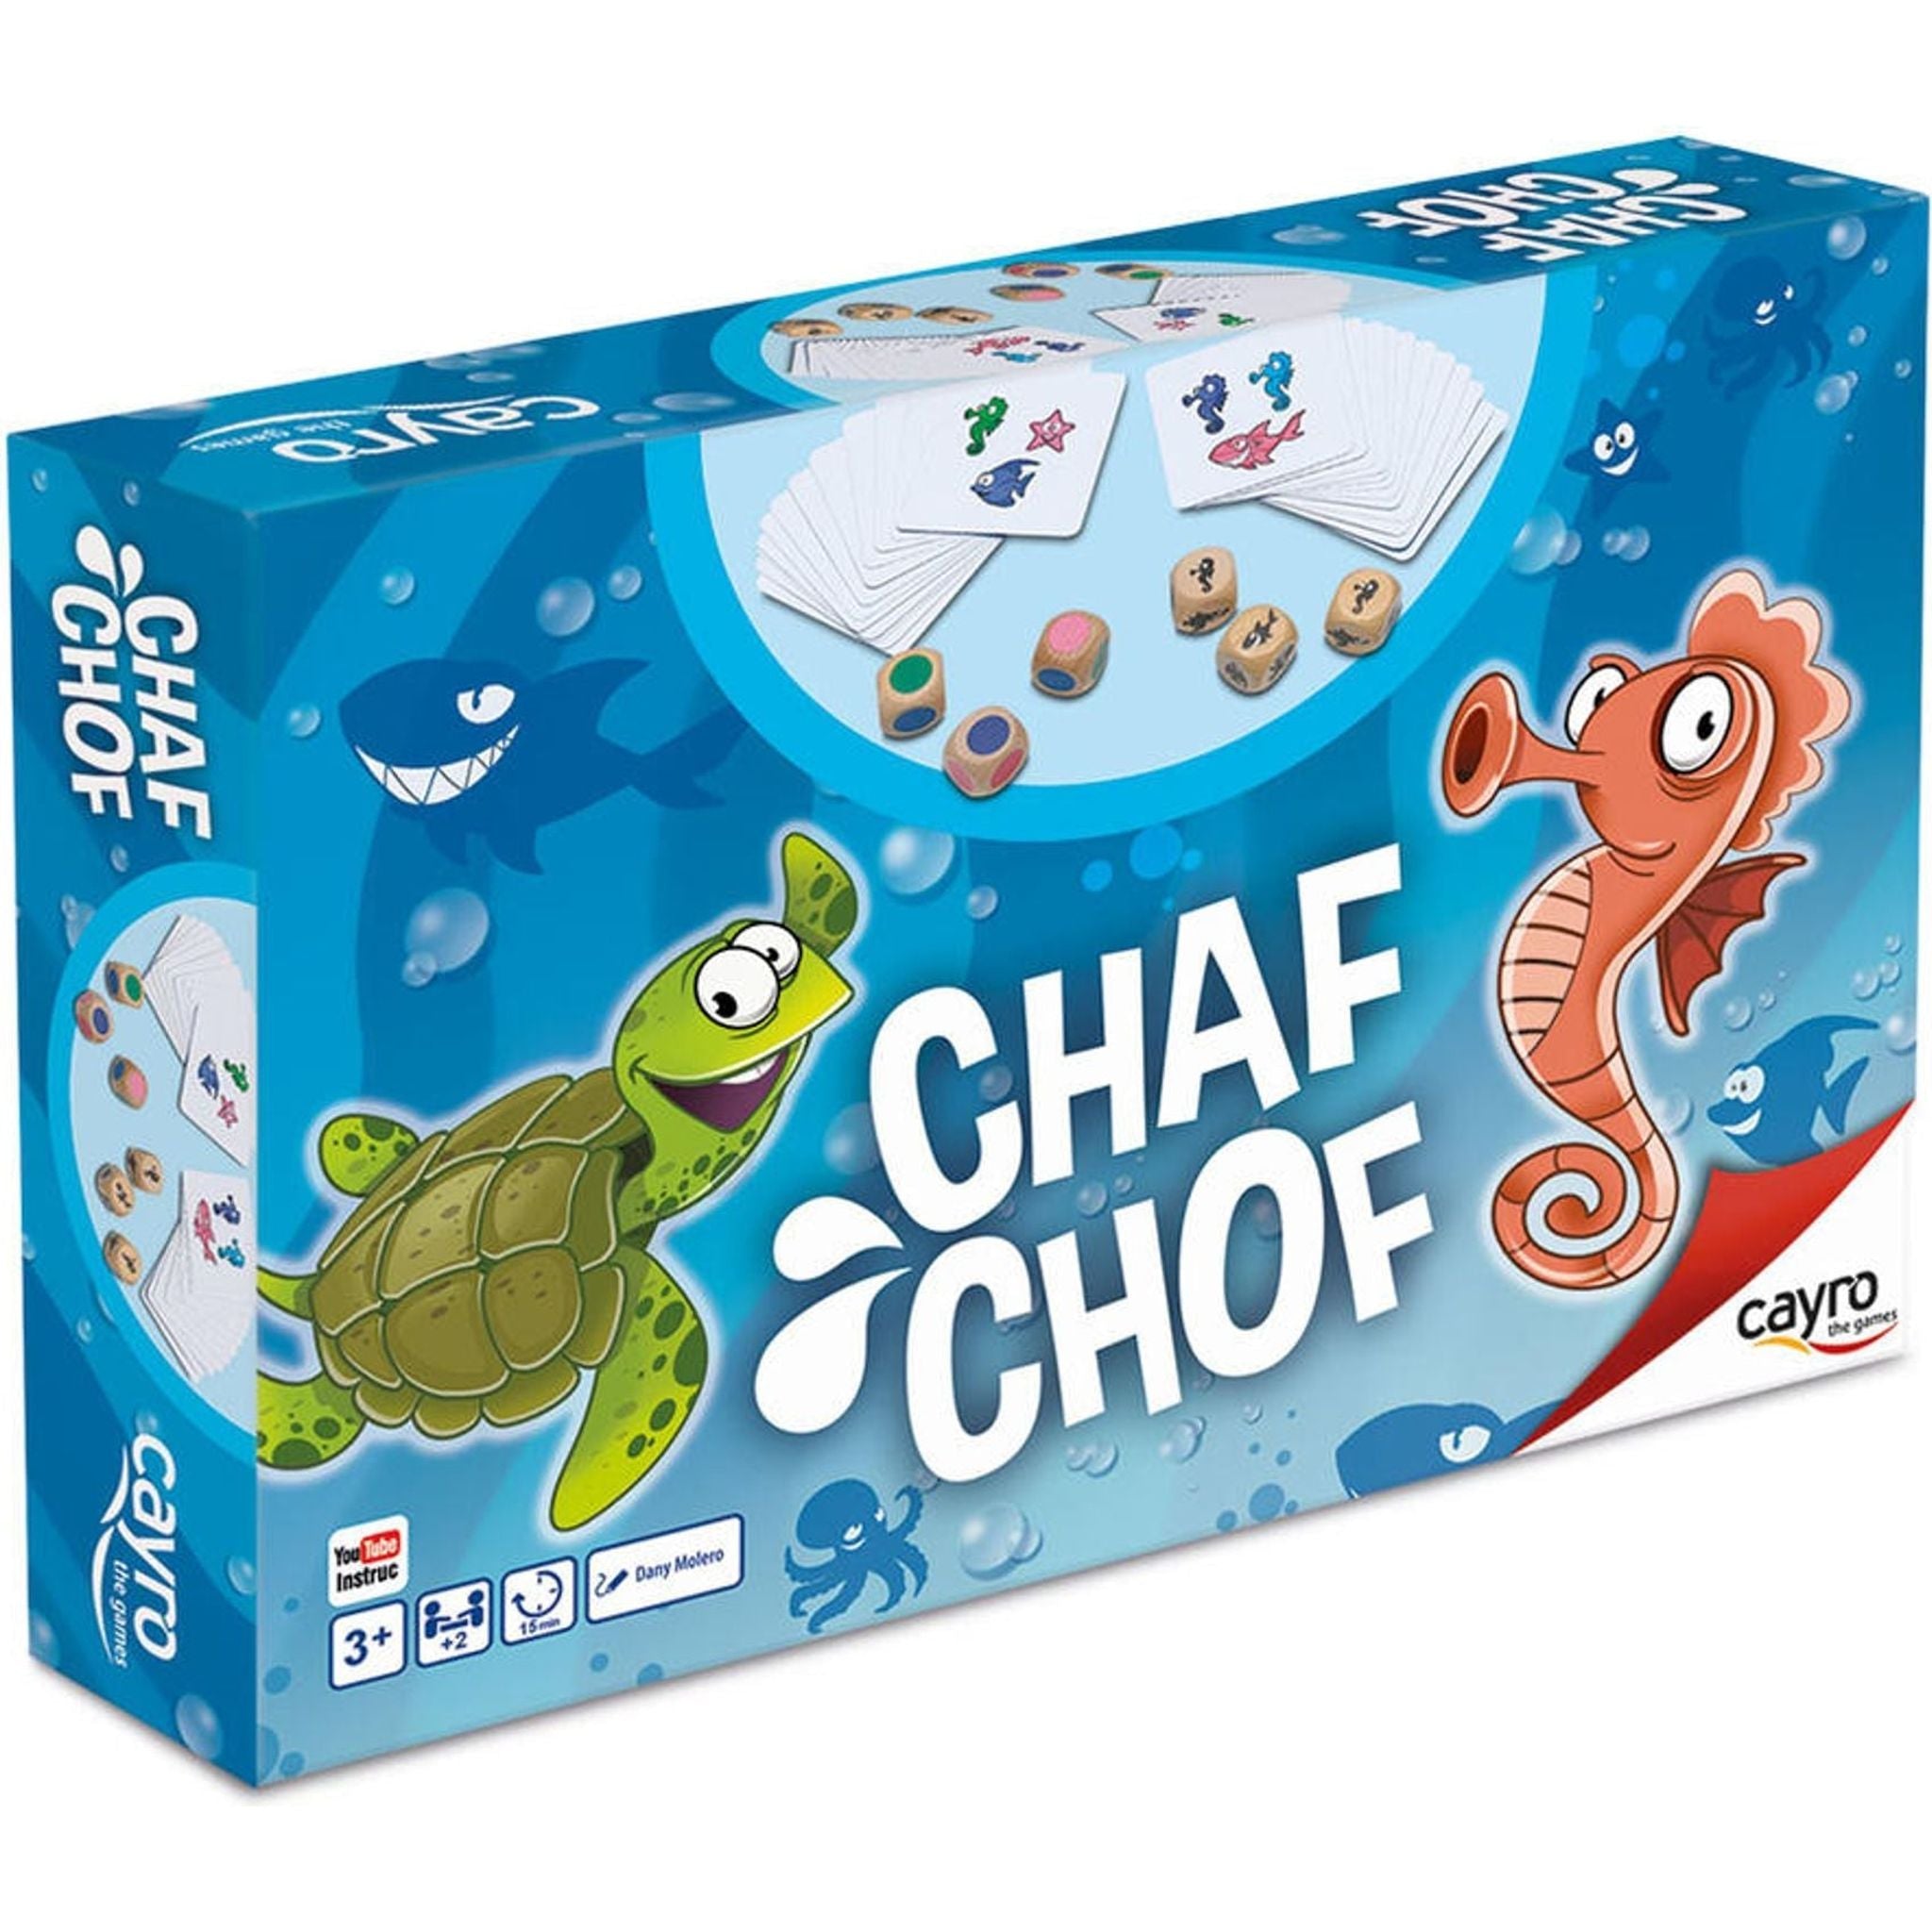 Chaf Chof - Toybox Tales